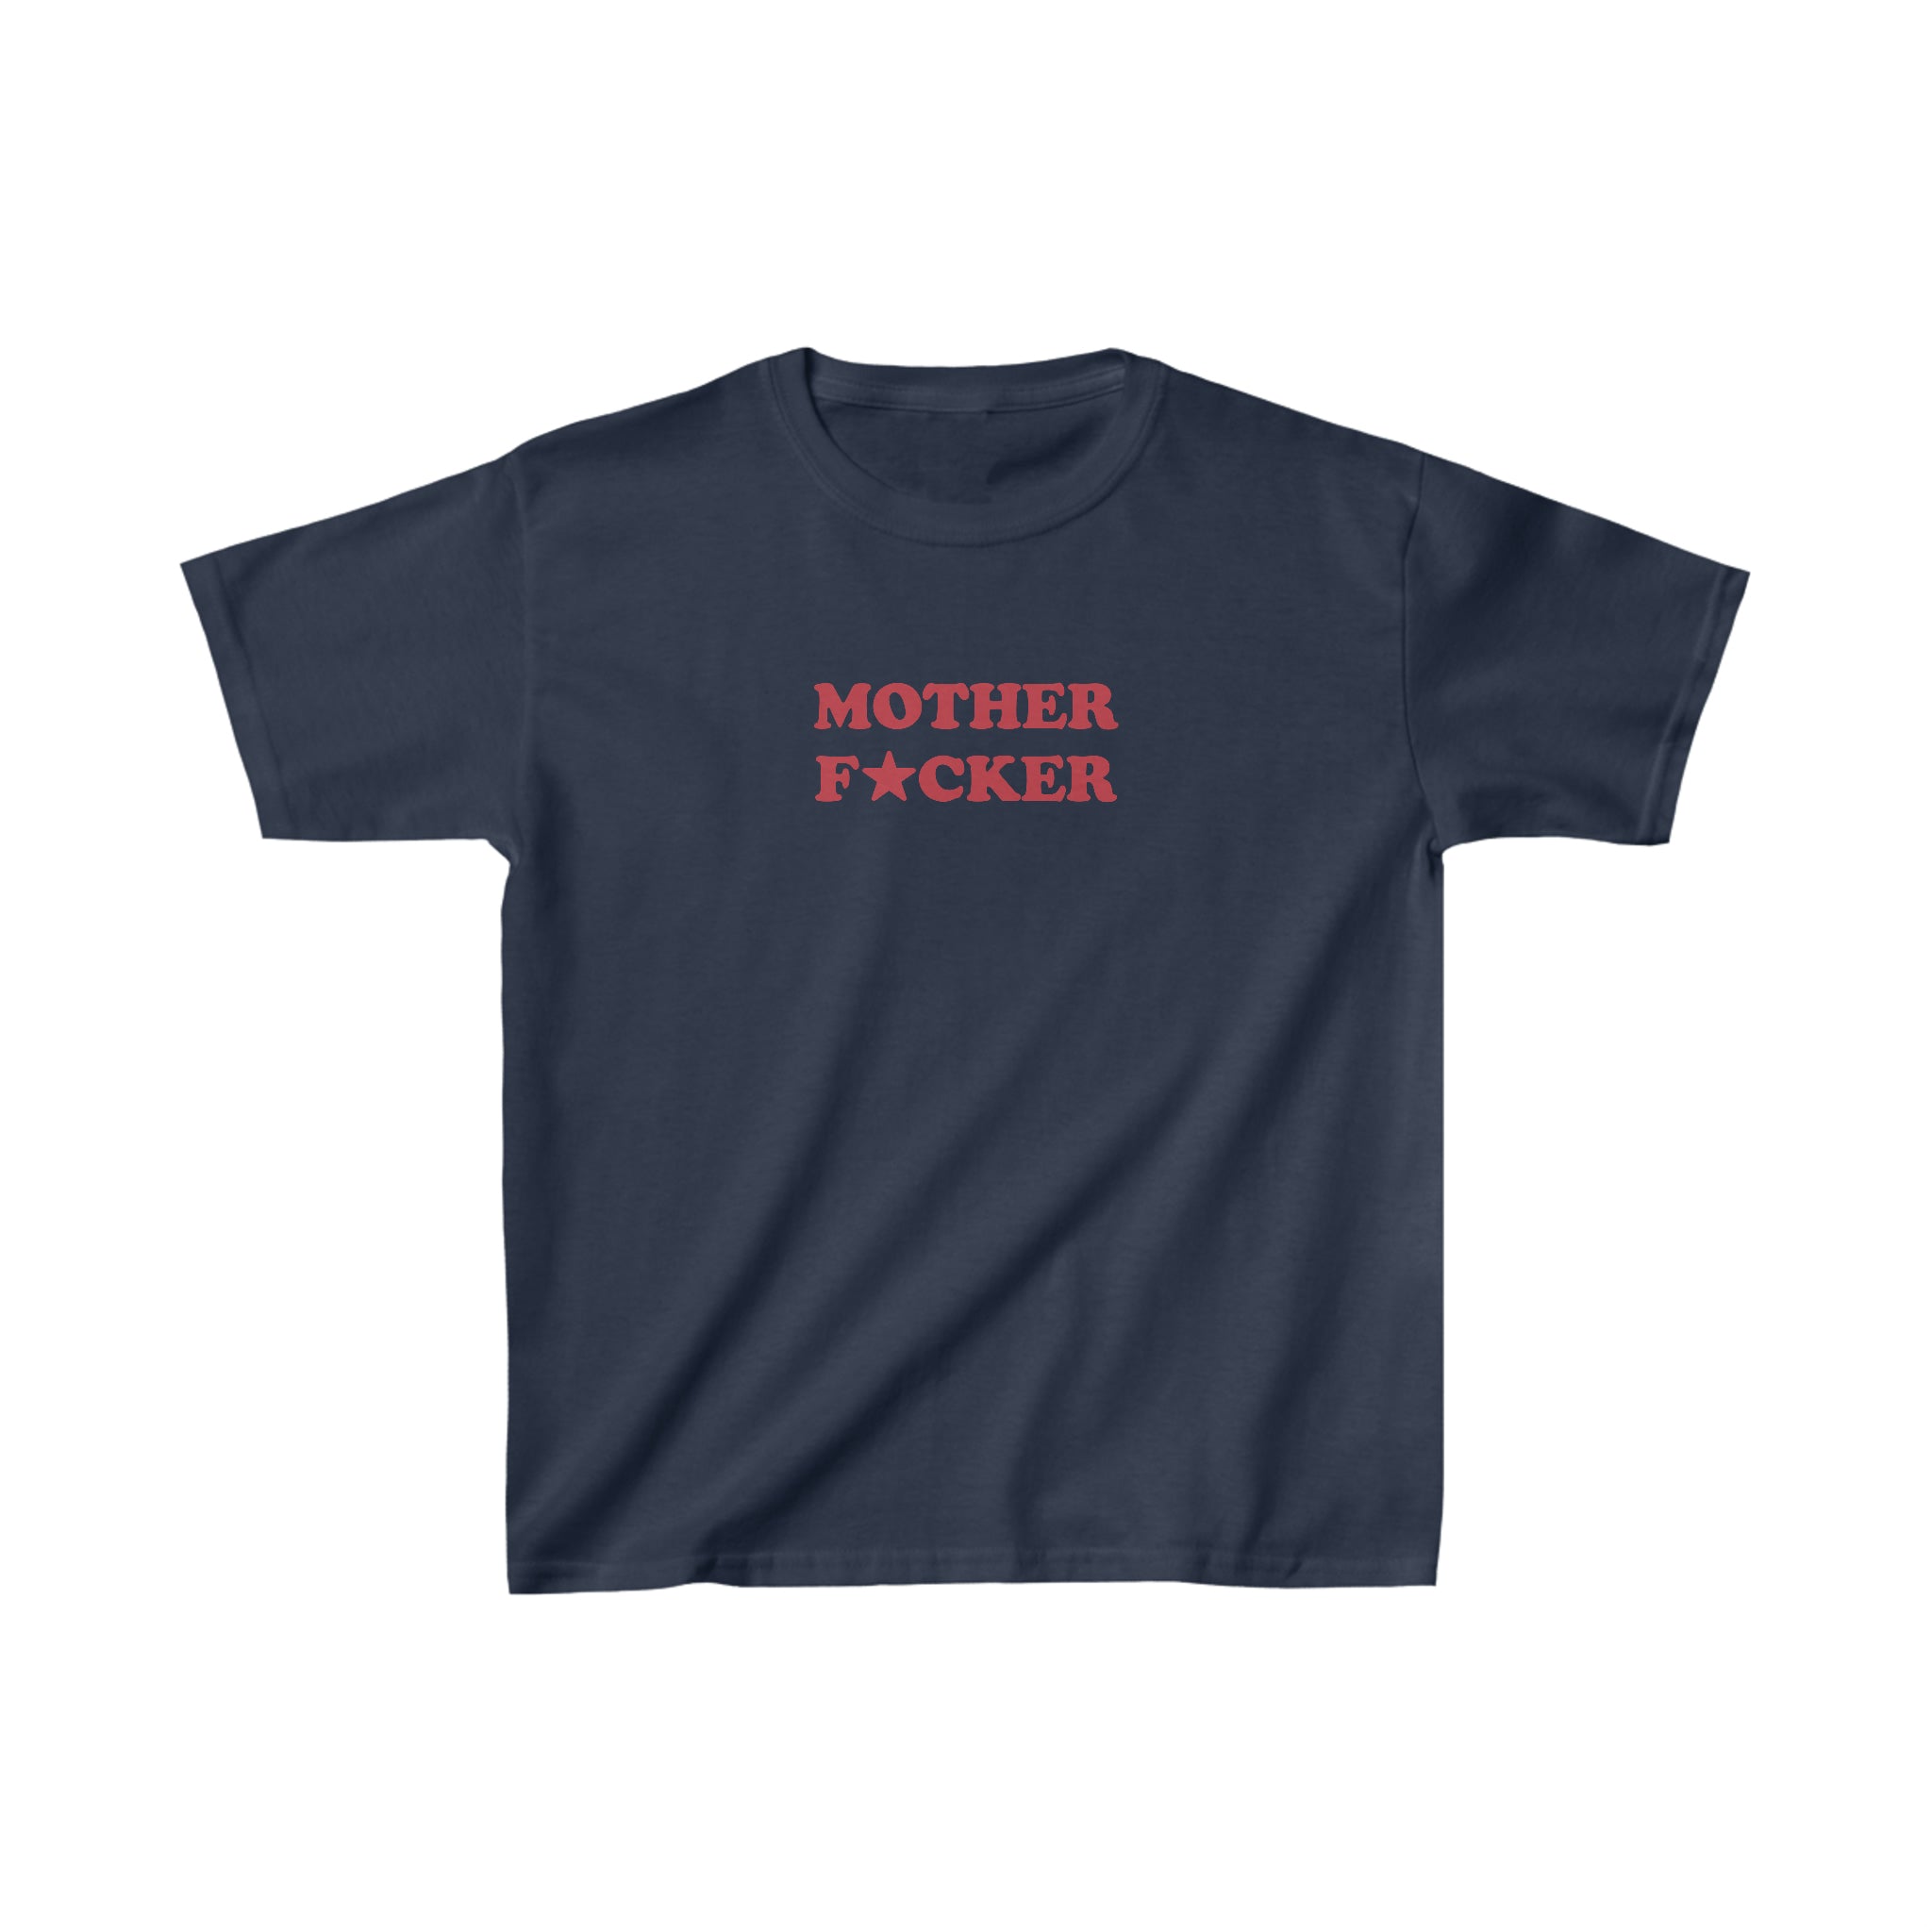 'Mother F★cker' baby tee - In Print We Trust